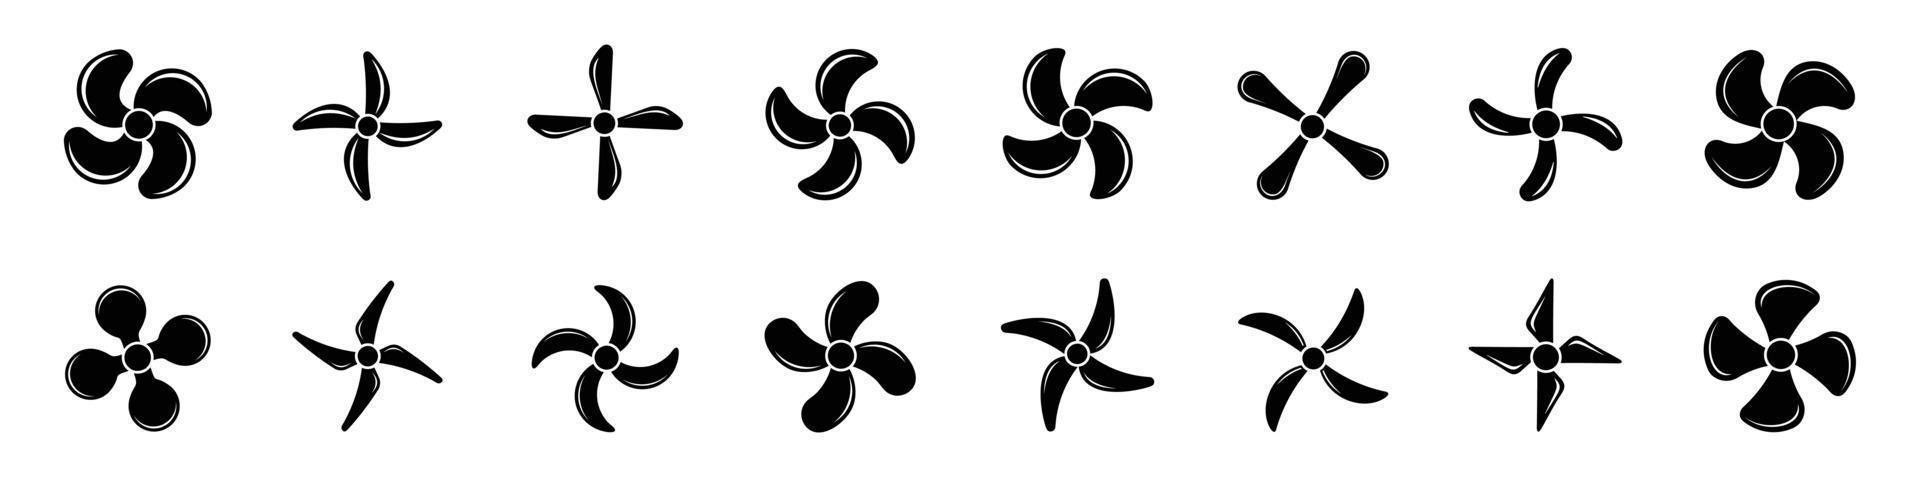 flygplan propeller ikoner, symboler fläkt roterande vektor illustration.propeller Ikonuppsättning